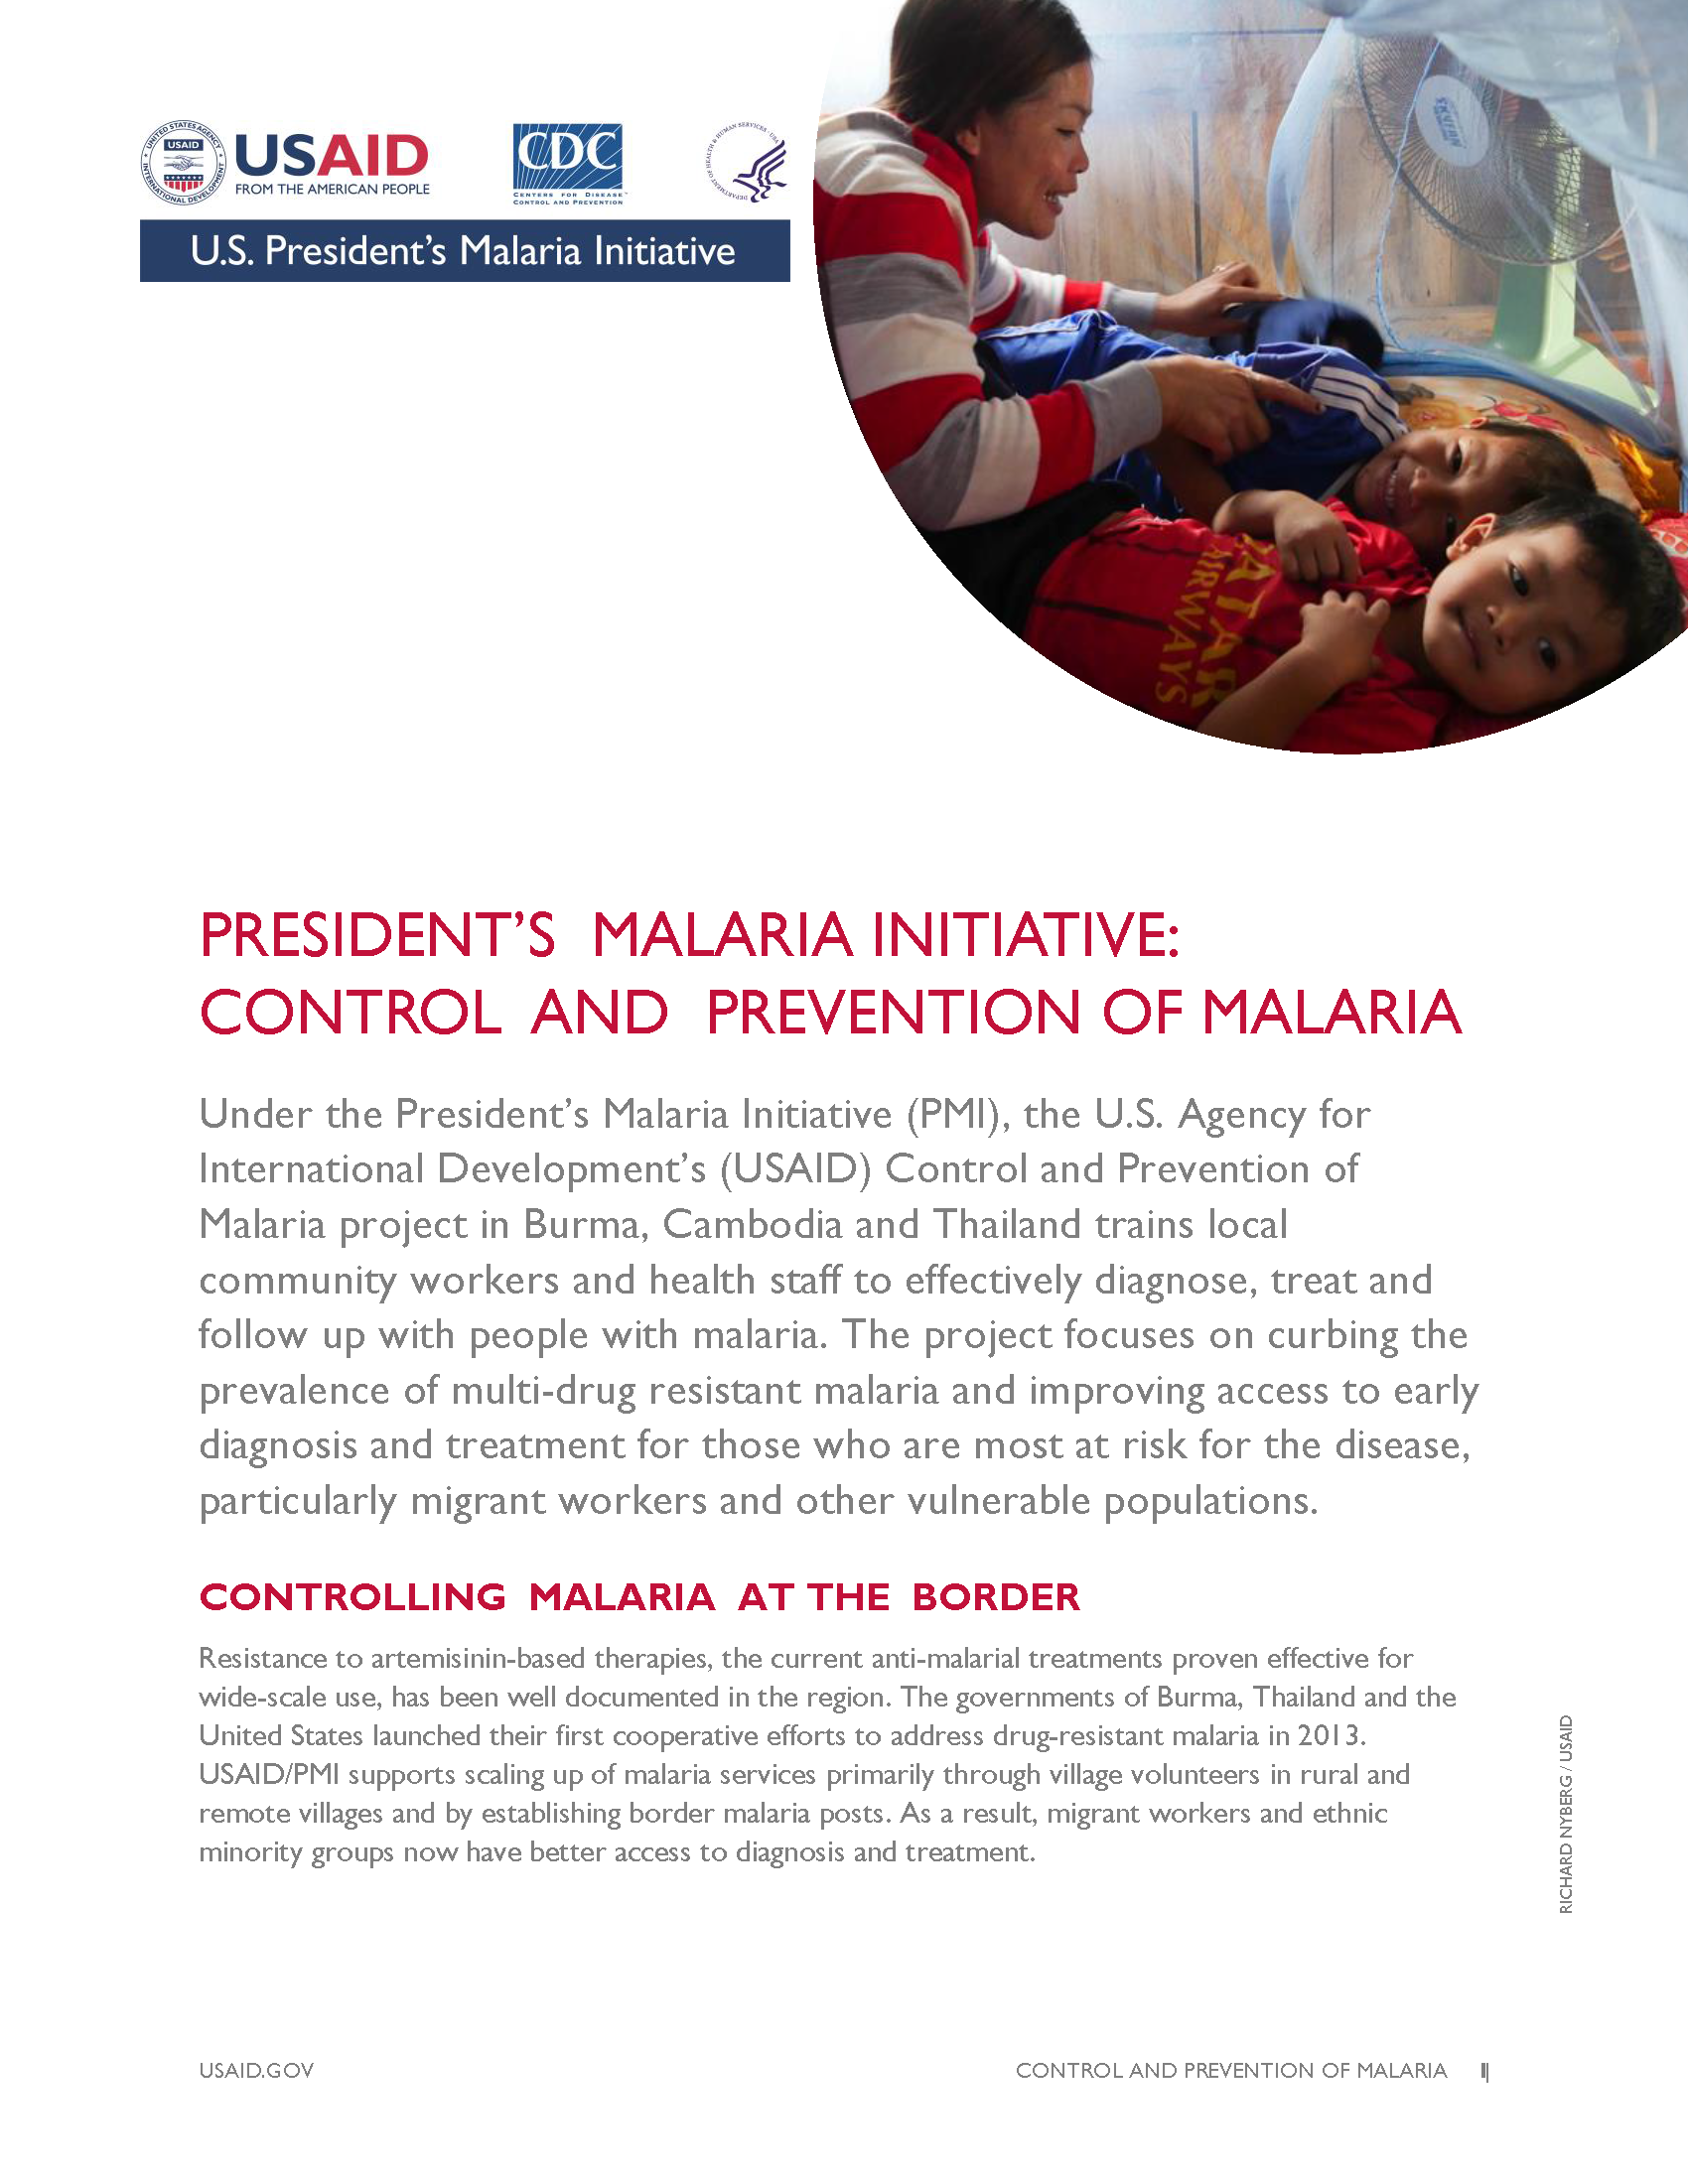 President's Malaria Initiative Control and Prevention of Malaria (CAP